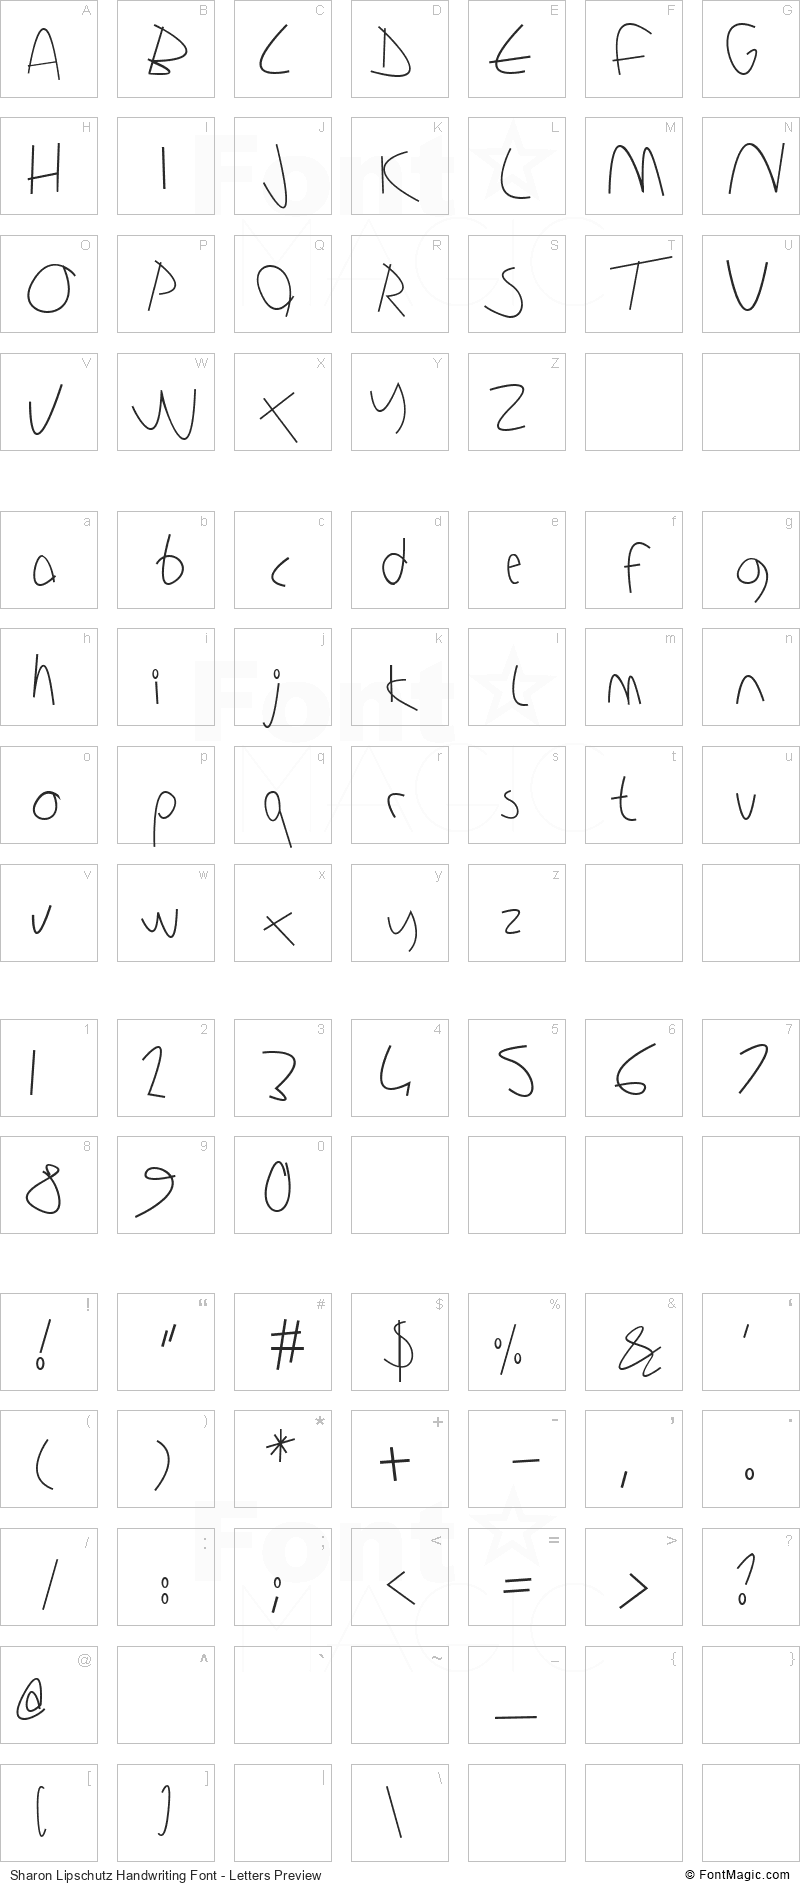 Sharon Lipschutz Handwriting Font - All Latters Preview Chart